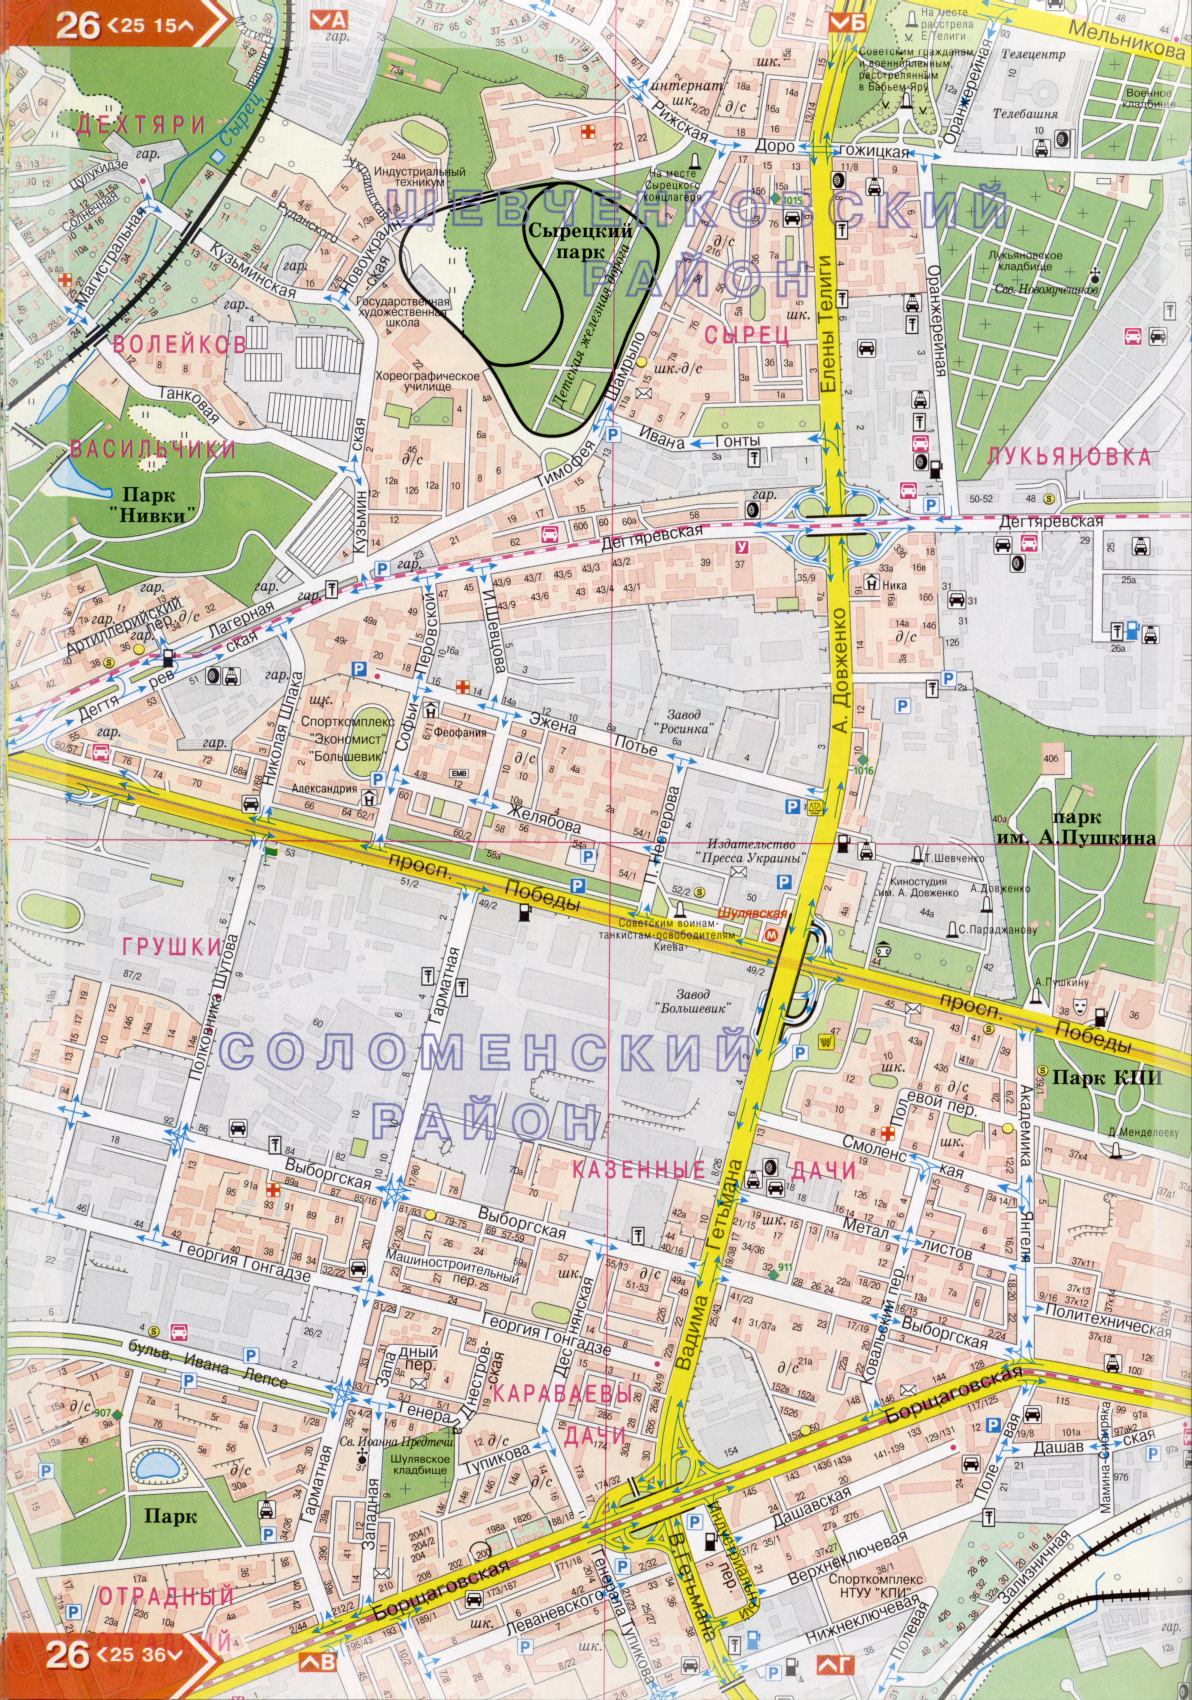 Kiew Karte Details 1cm = 150m für 45 Blatt. Karte von Kiew aus dem Atlas von Autobahnen. Laden Sie eine detaillierte Karte, C2 - Victory Avenue in Kiew